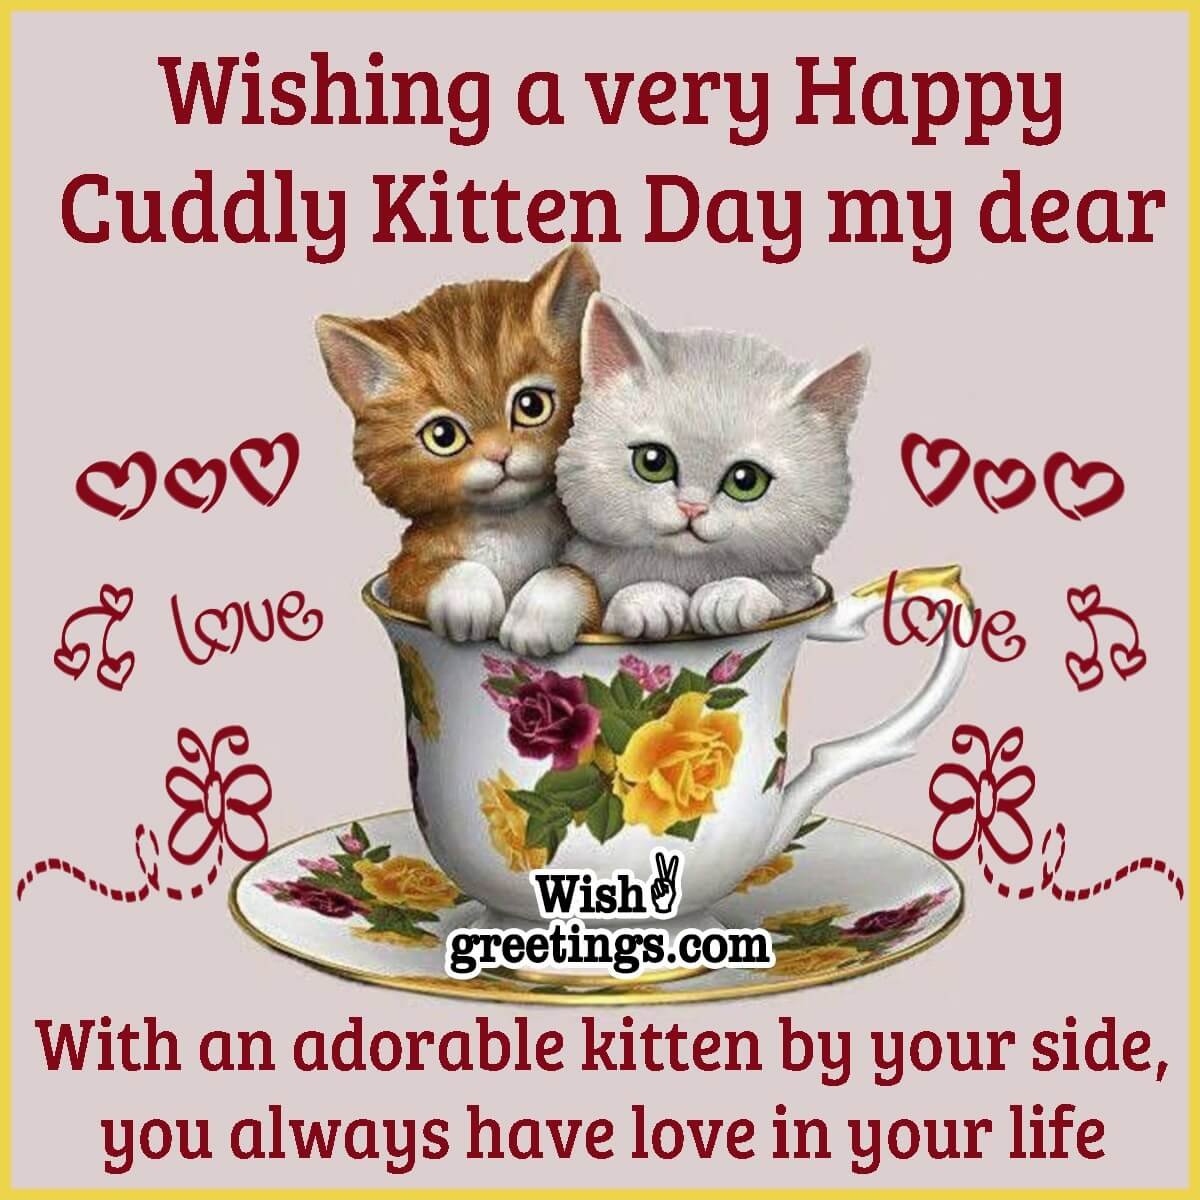 Wishing A Very Happy Cuddly Kitten Day My Dear